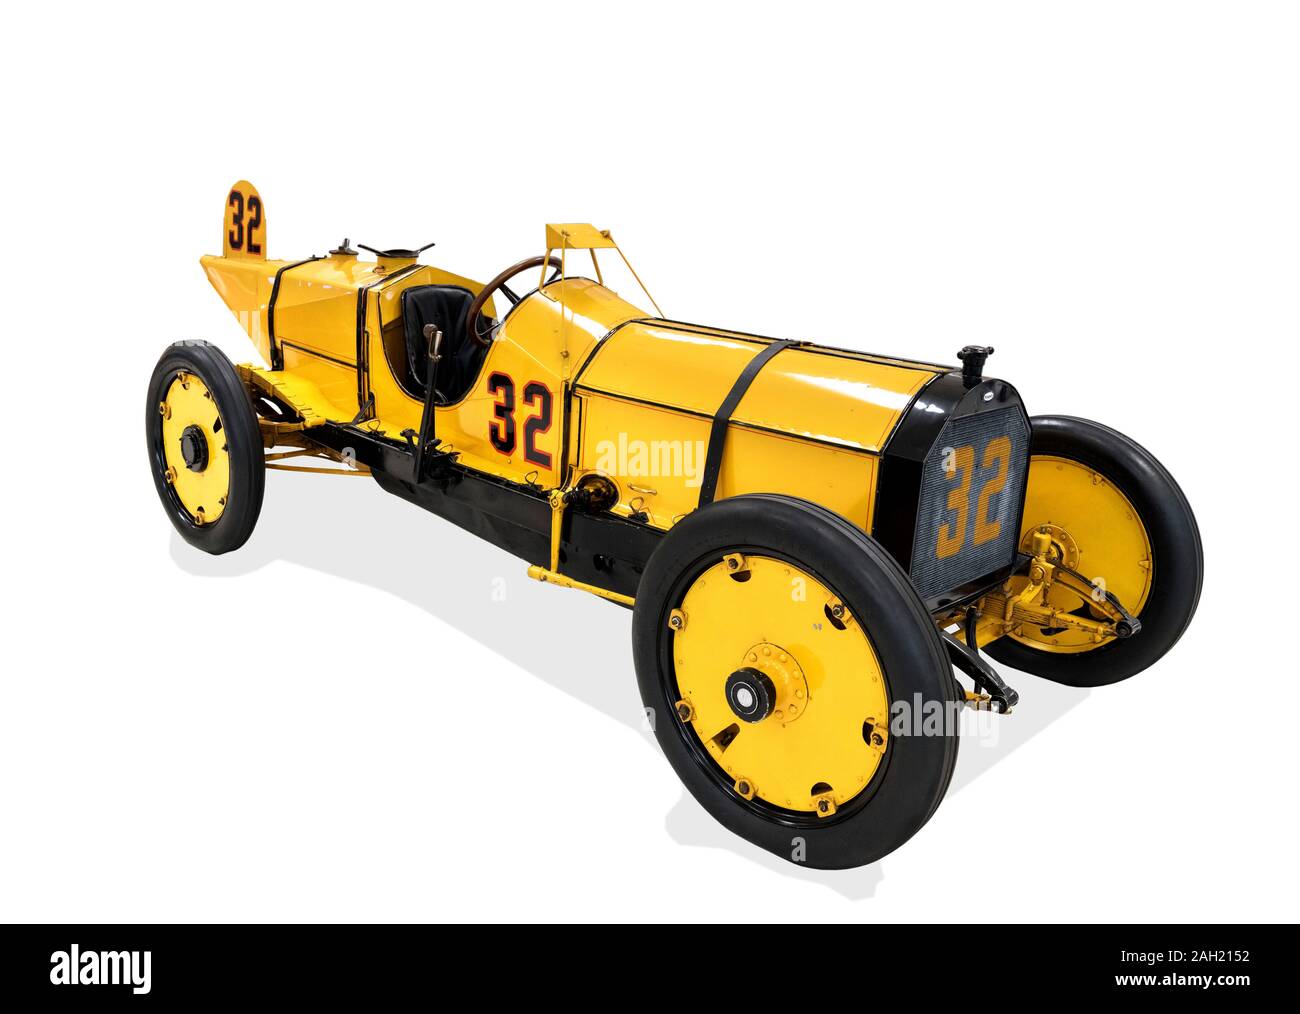 El Marmon 'Wasp' que ganó las 500 Millas de Indianápolis 1911 inaugural en 1911, Indianapolis Motor Speedway Museum, Indianapolis, Indiana, EE.UU. Foto de stock